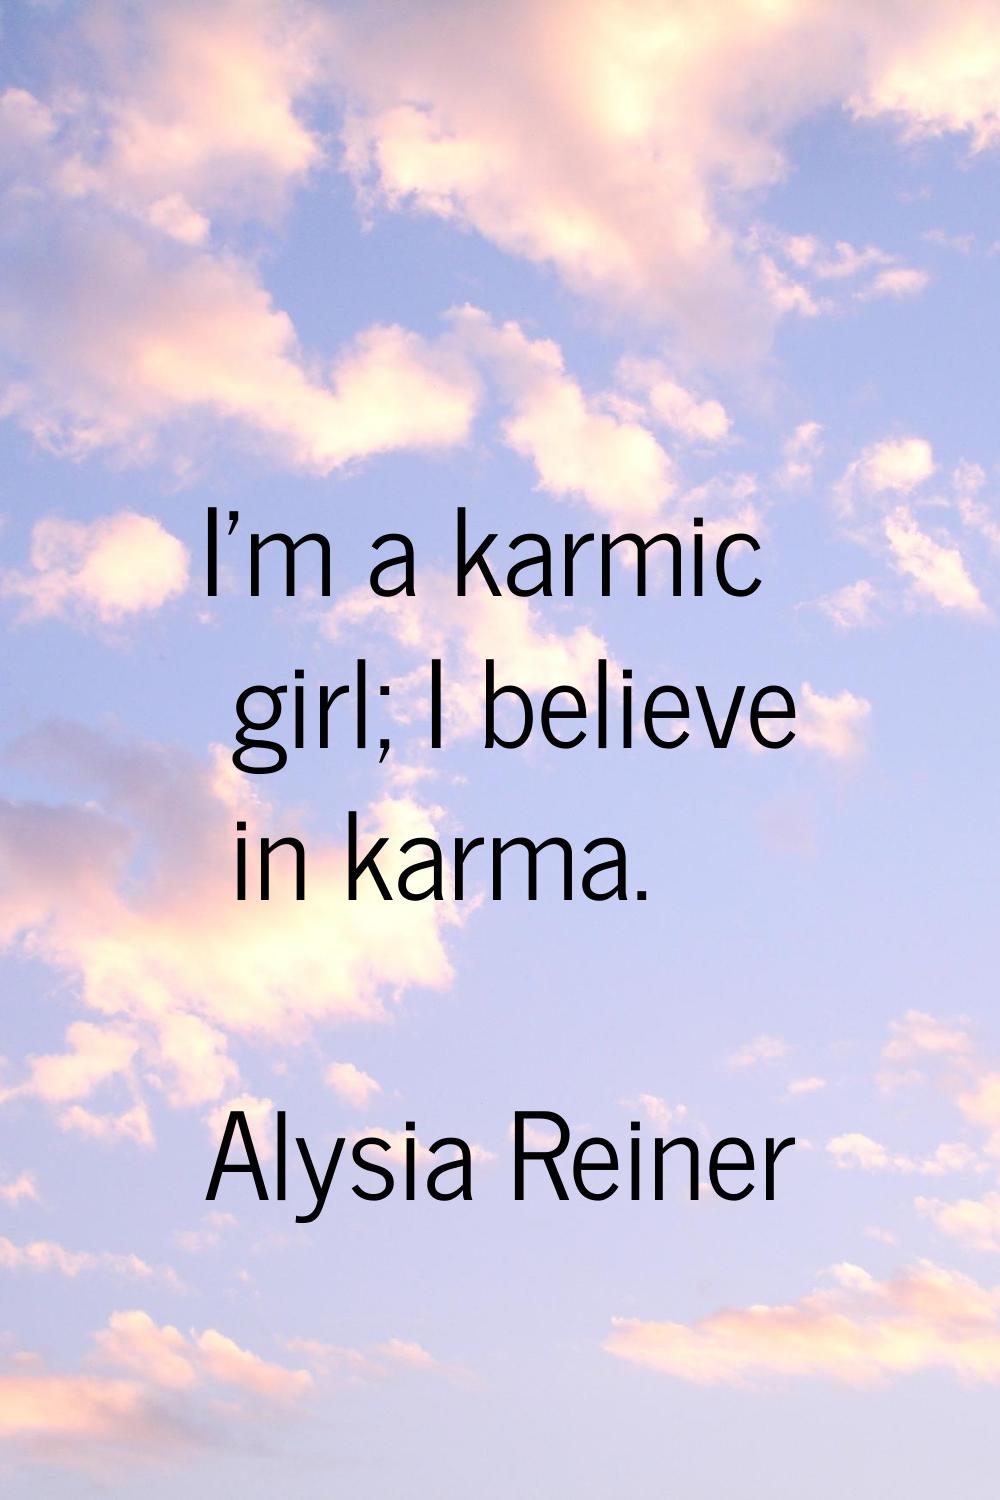 I'm a karmic girl; I believe in karma.